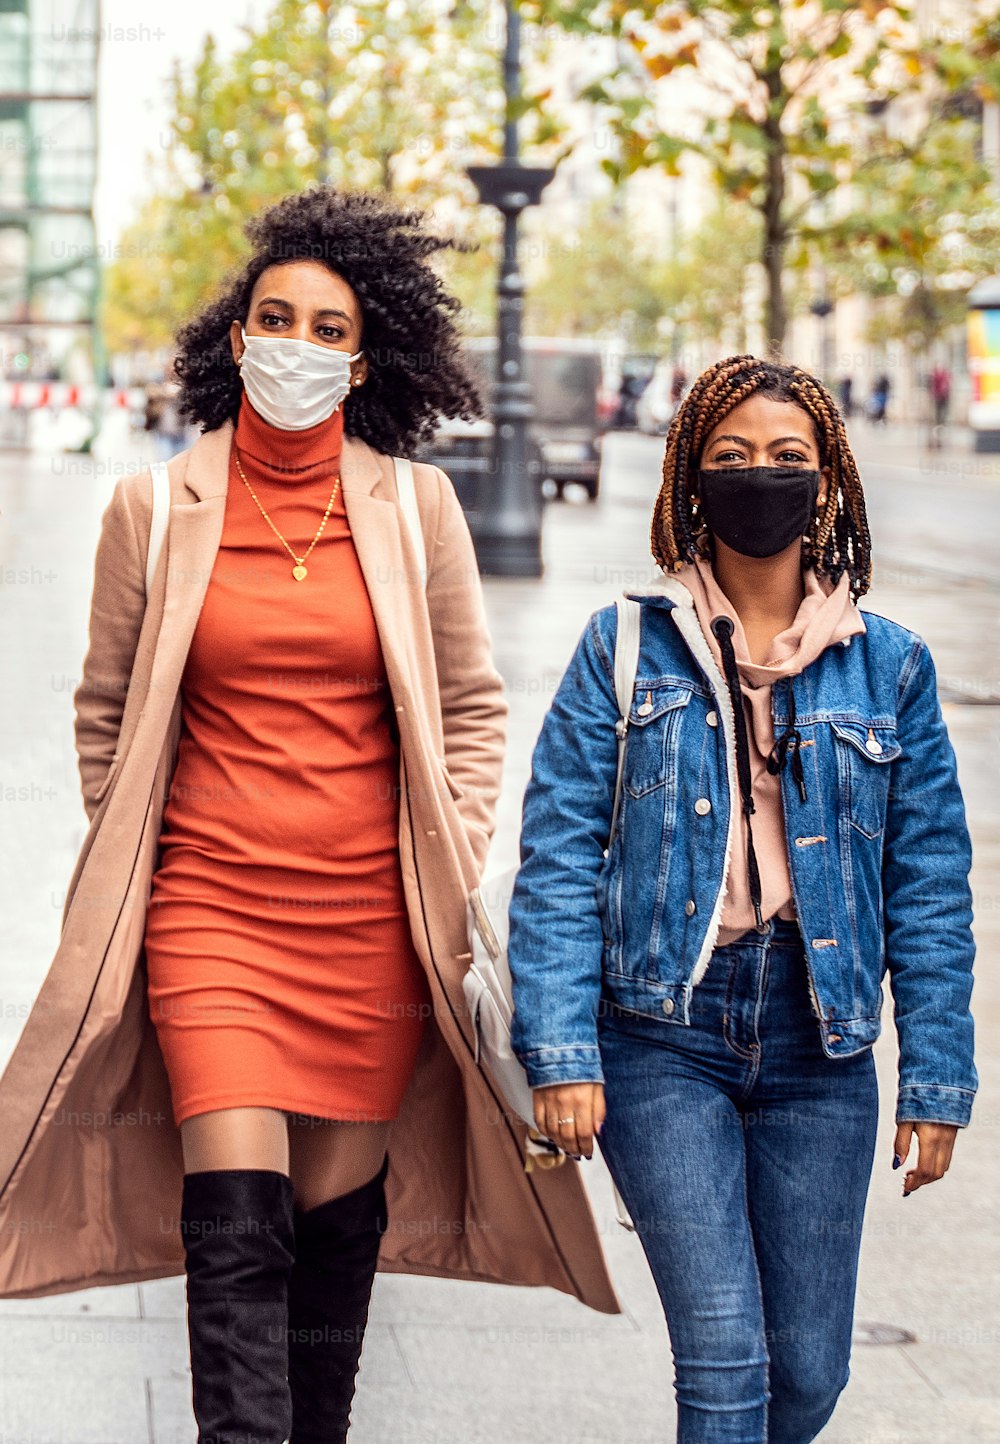 보호용 안면 마스크를 쓰고 도시 거리를 걷고 있는 두 명의 여성 아프리카 친구. 팬데믹 시간. 젊은 사람들의 라이프 스타일 개념입니다.